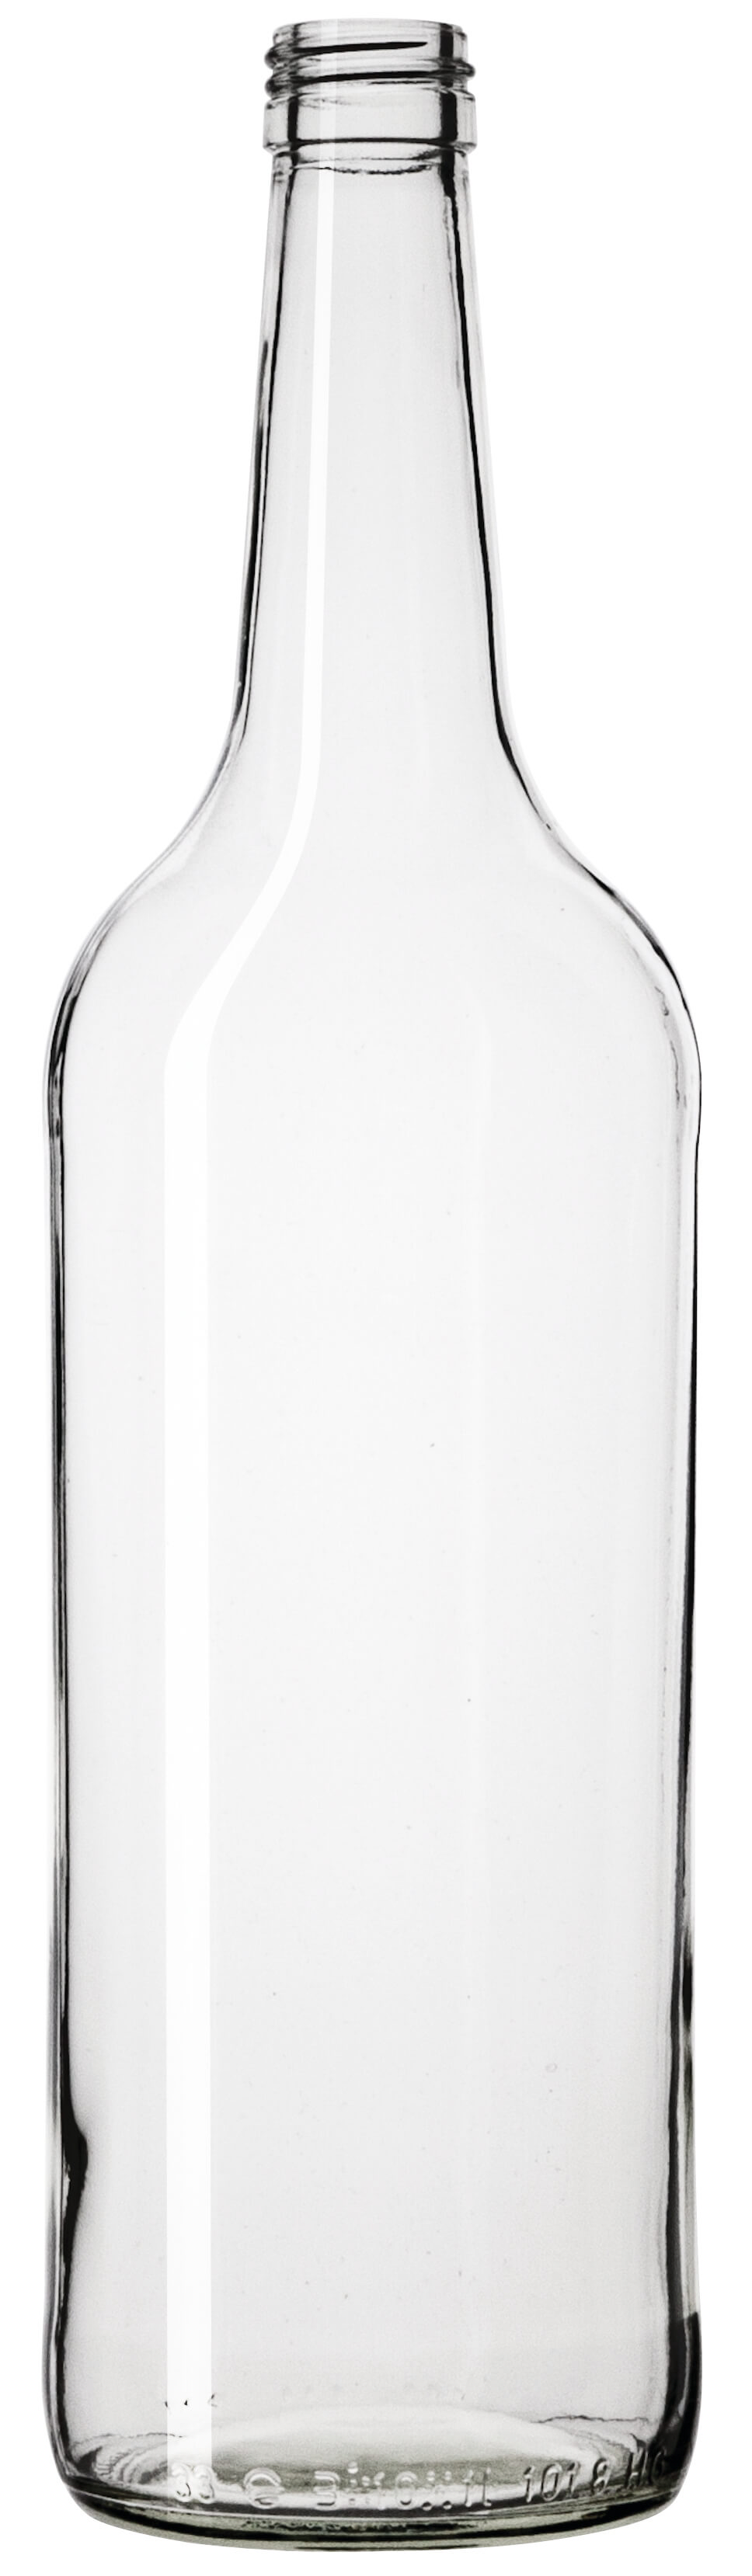 Glass bottle, clear - 1000ml